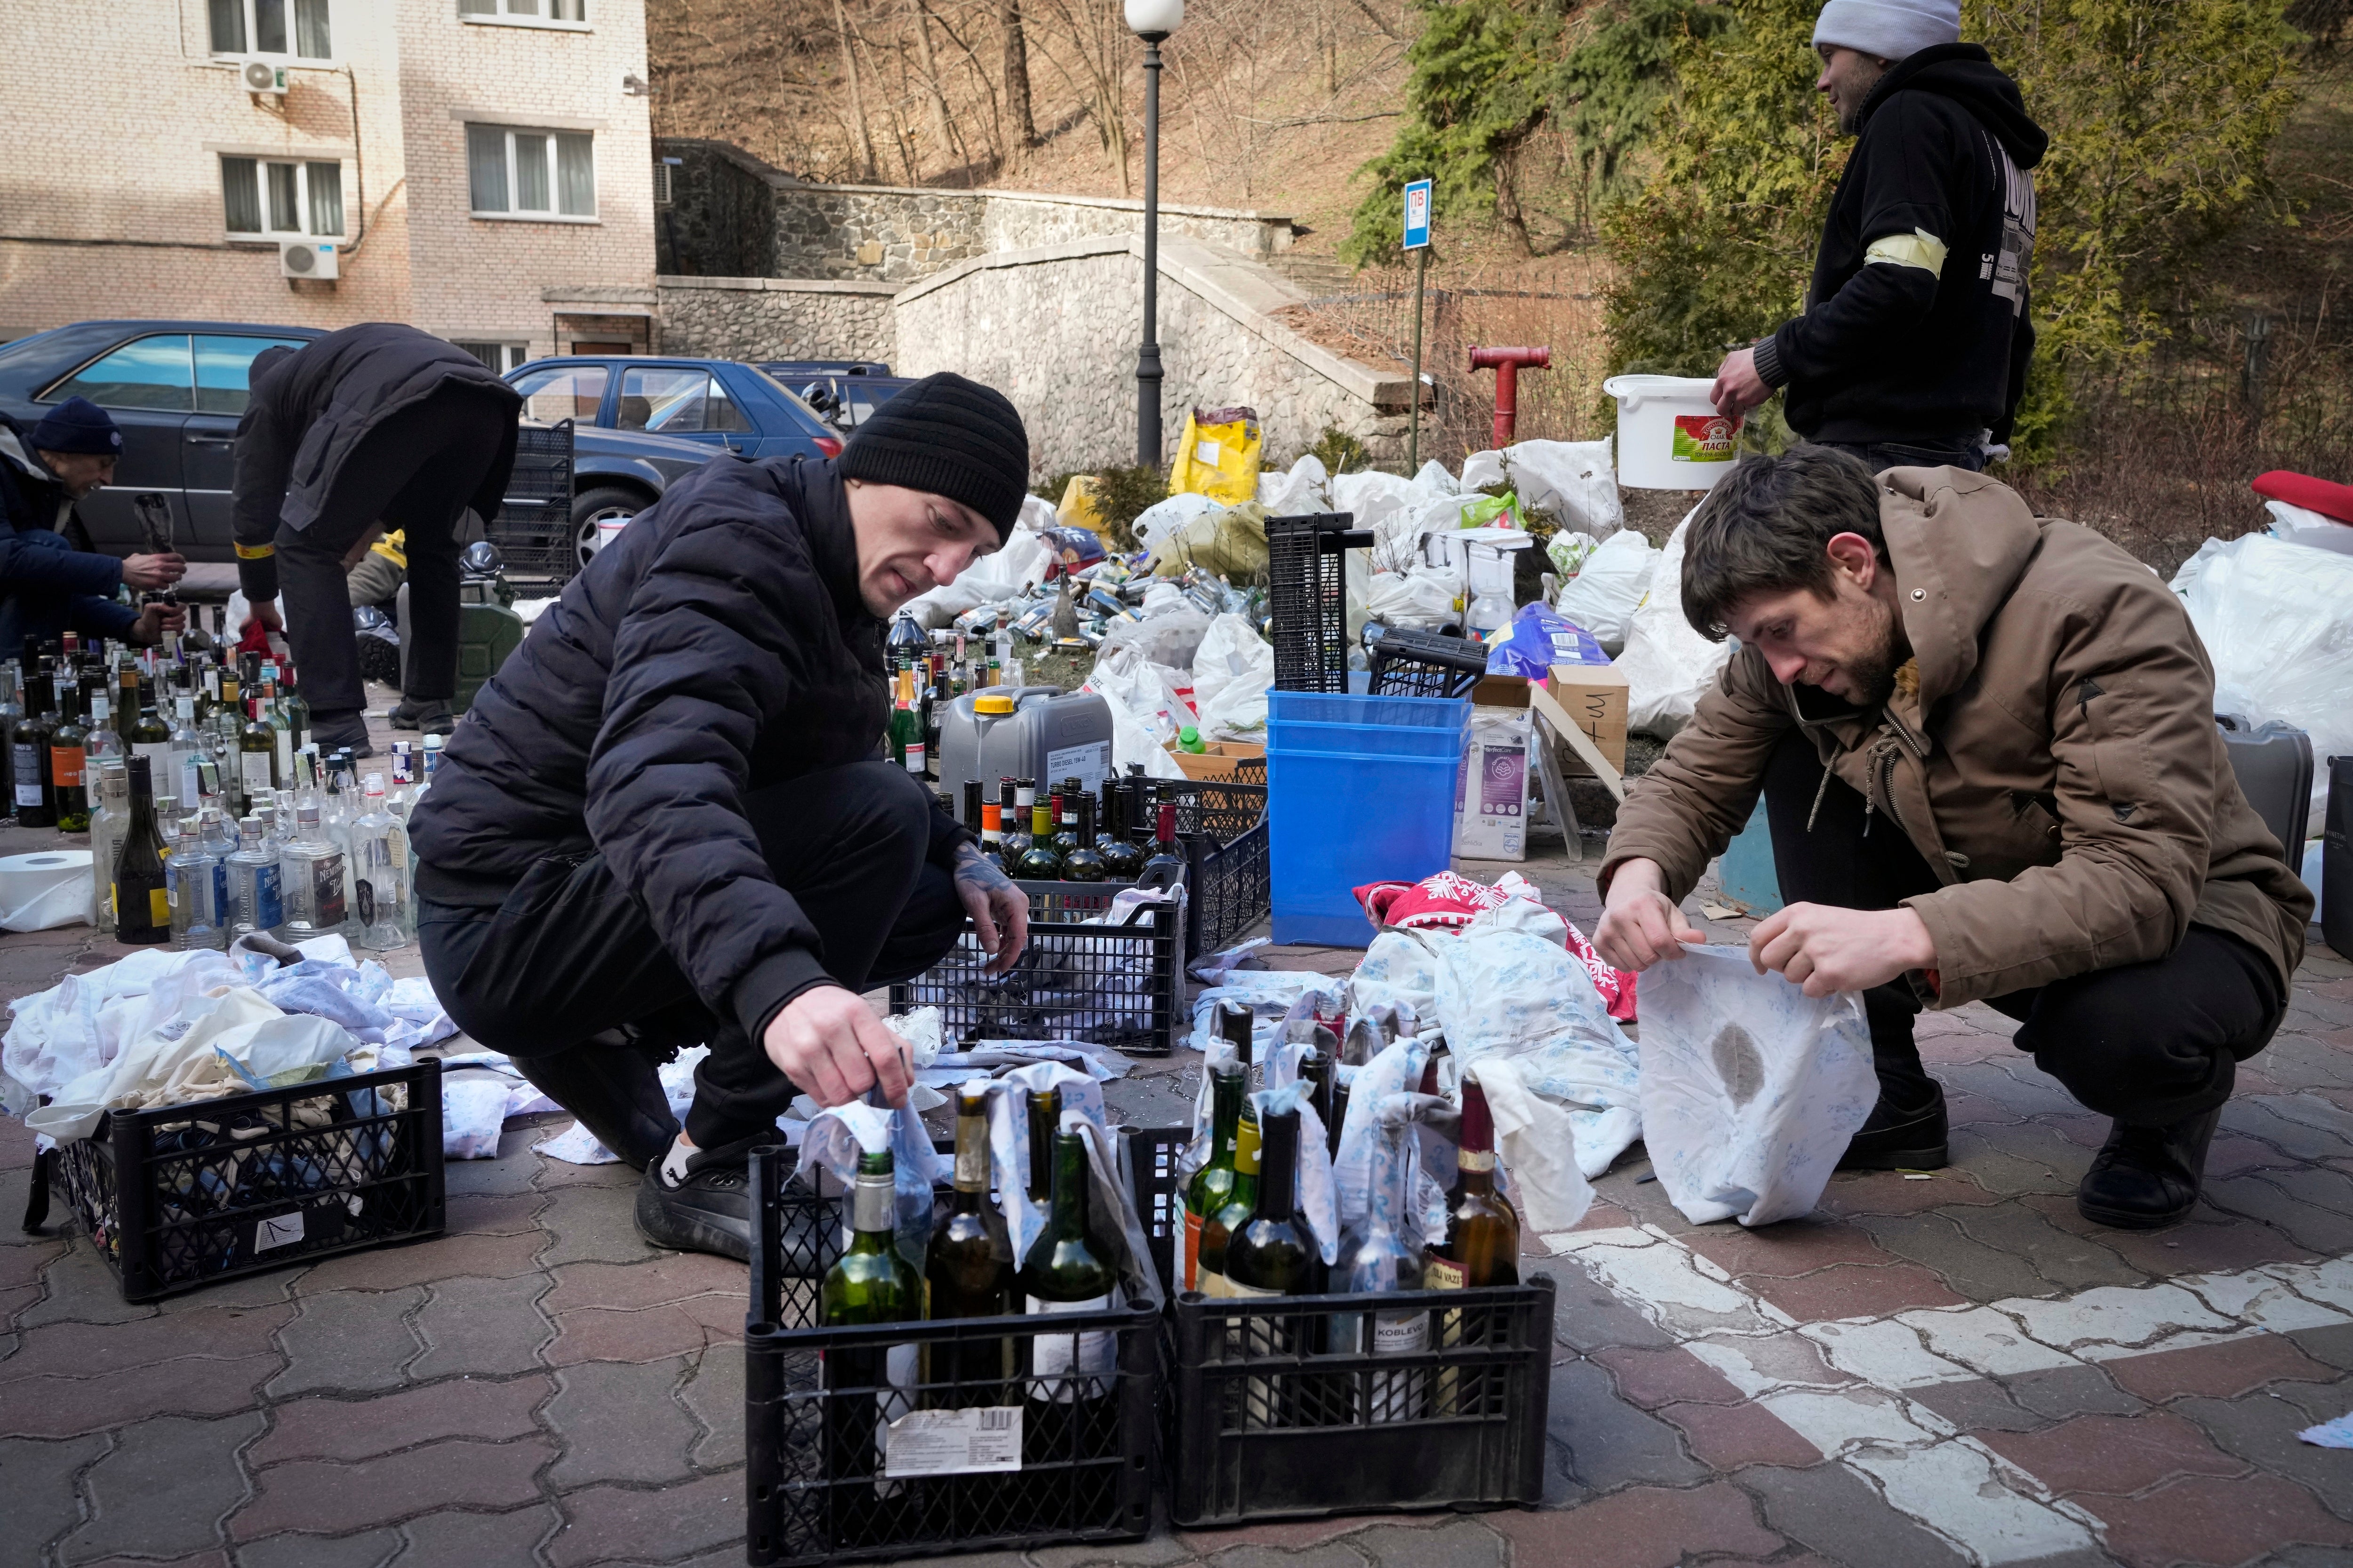 Members of civil defense prepare Molotov cocktails in a yard in Kyiv, Ukraine